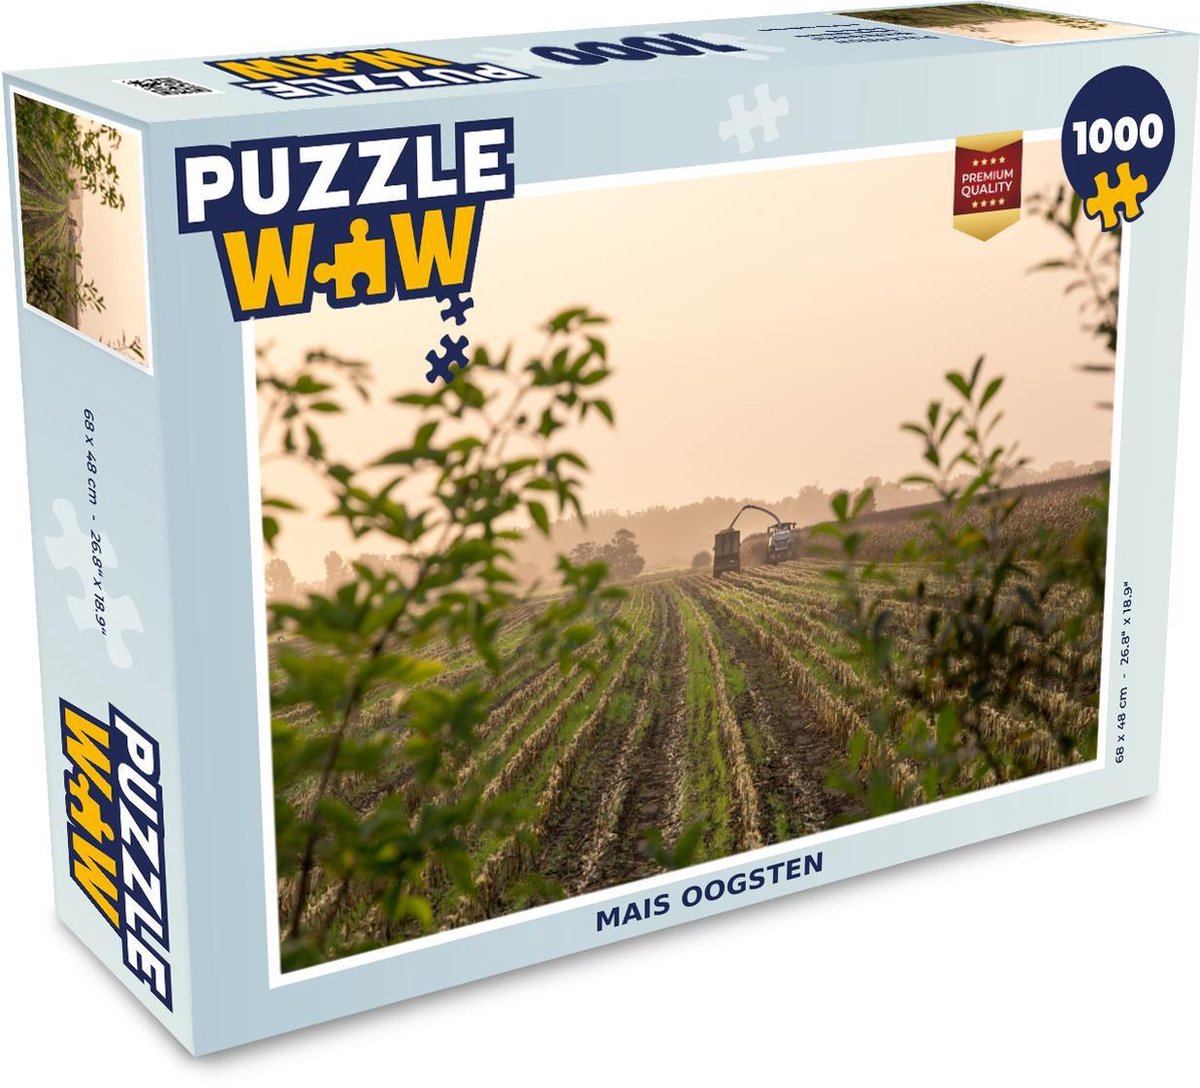 Afbeelding van product Puzzel 1000 stukjes volwassenen Maïsvelden 1000 stukjes - Mais oogsten puzzel 1000 stukjes - PuzzleWow heeft +100000 puzzels